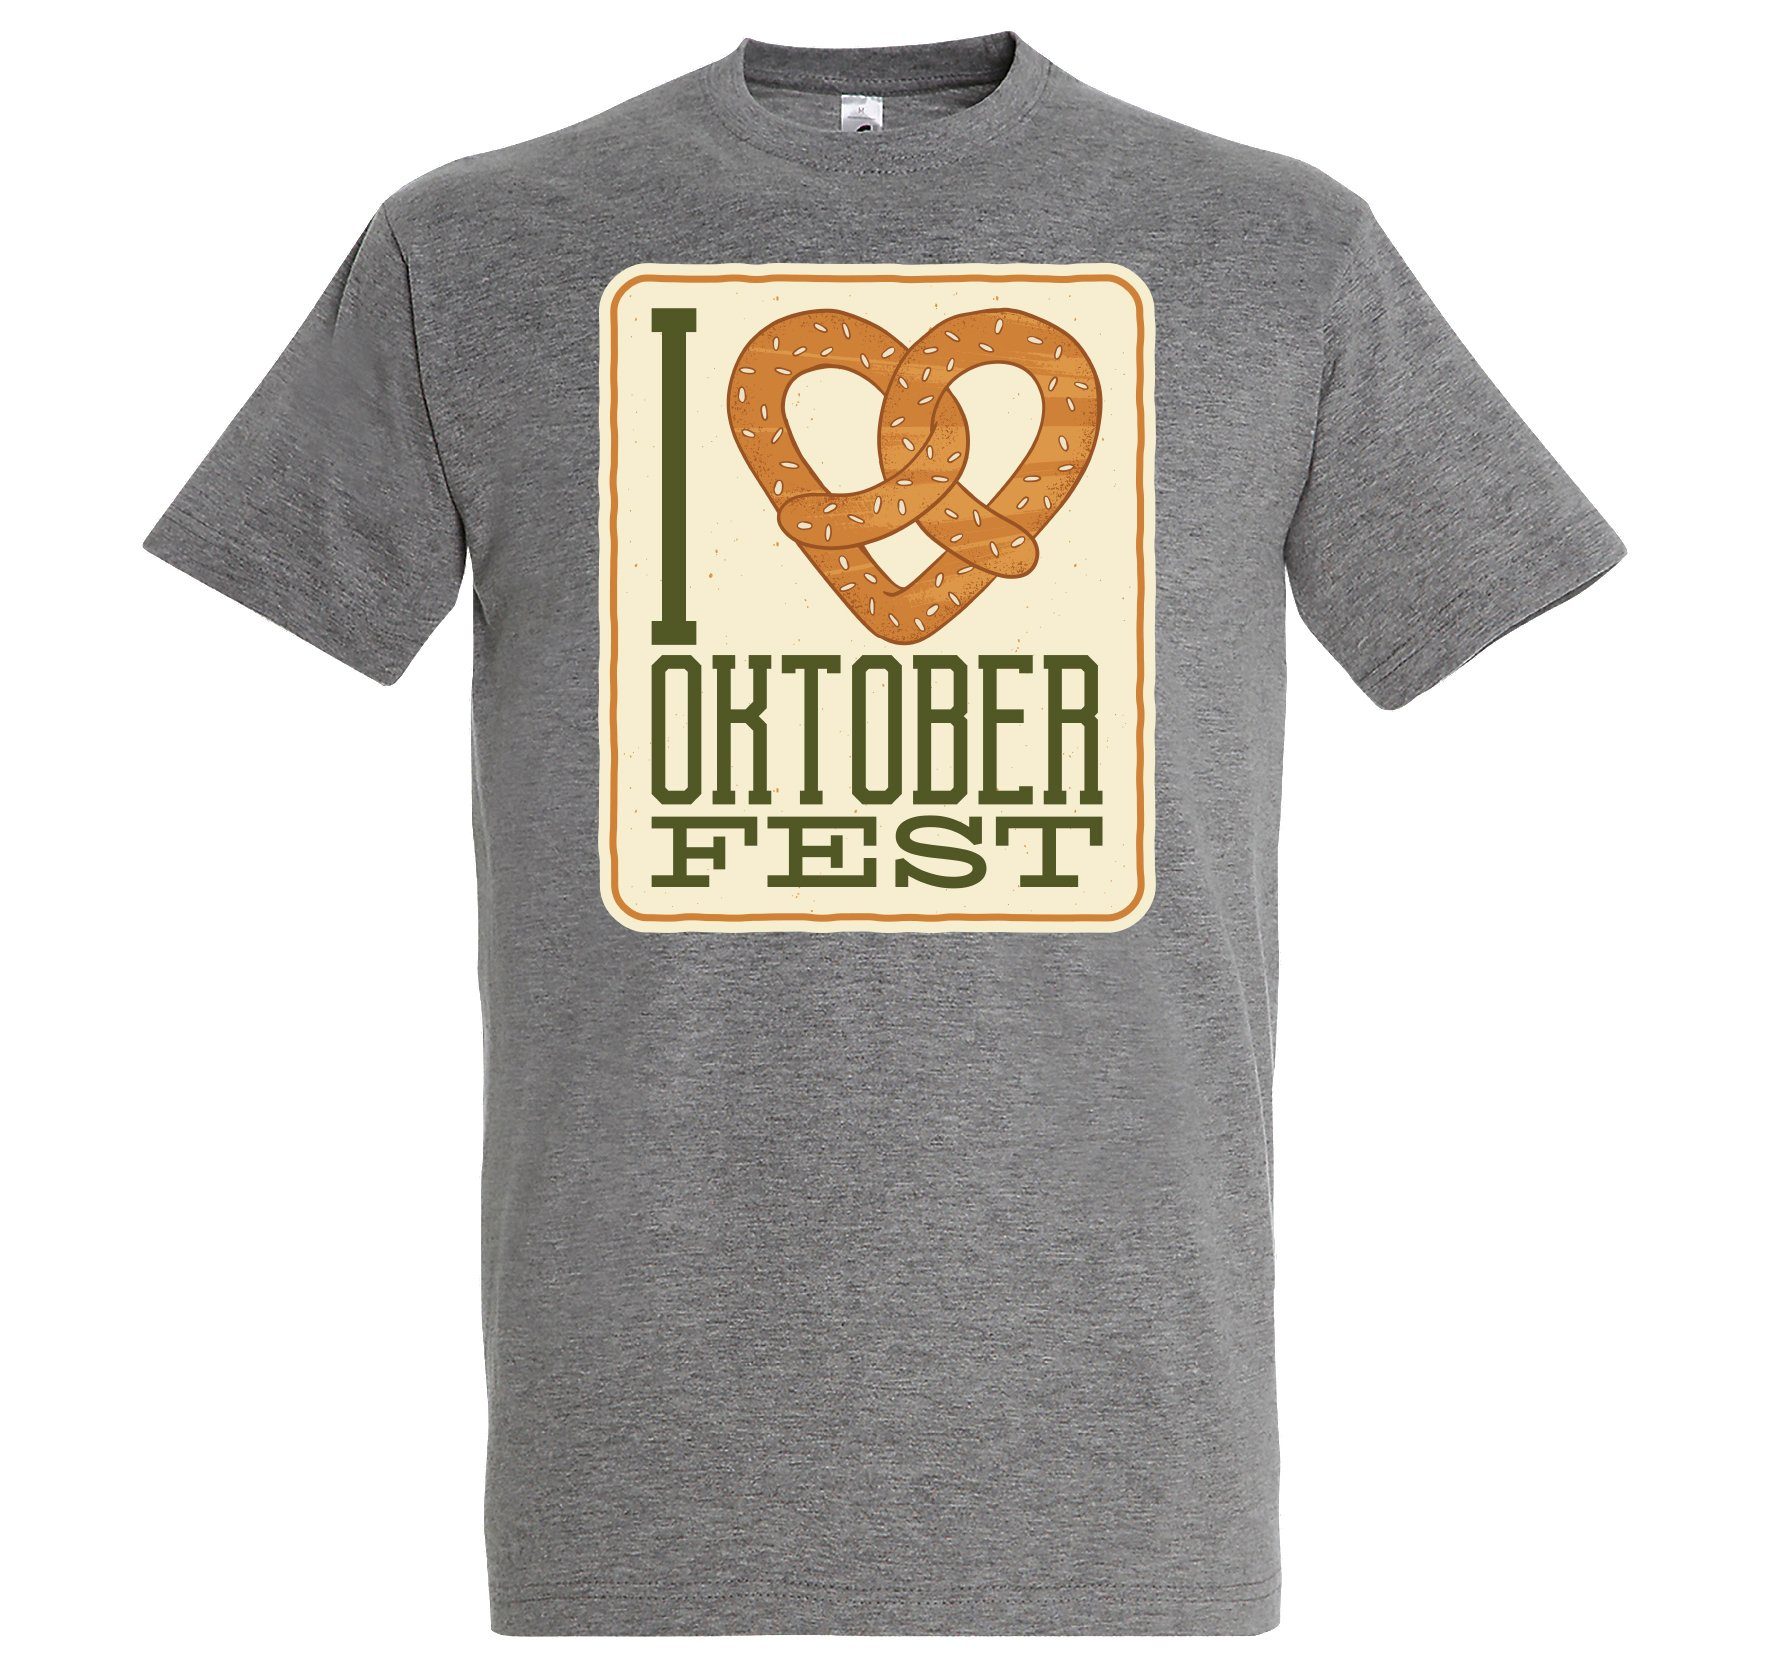 Youth Designz Print-Shirt I LOVE OKTOBERFEST Herren T-Shirt mit Fun-Look Brezel Aufdruck und Spruch Grau